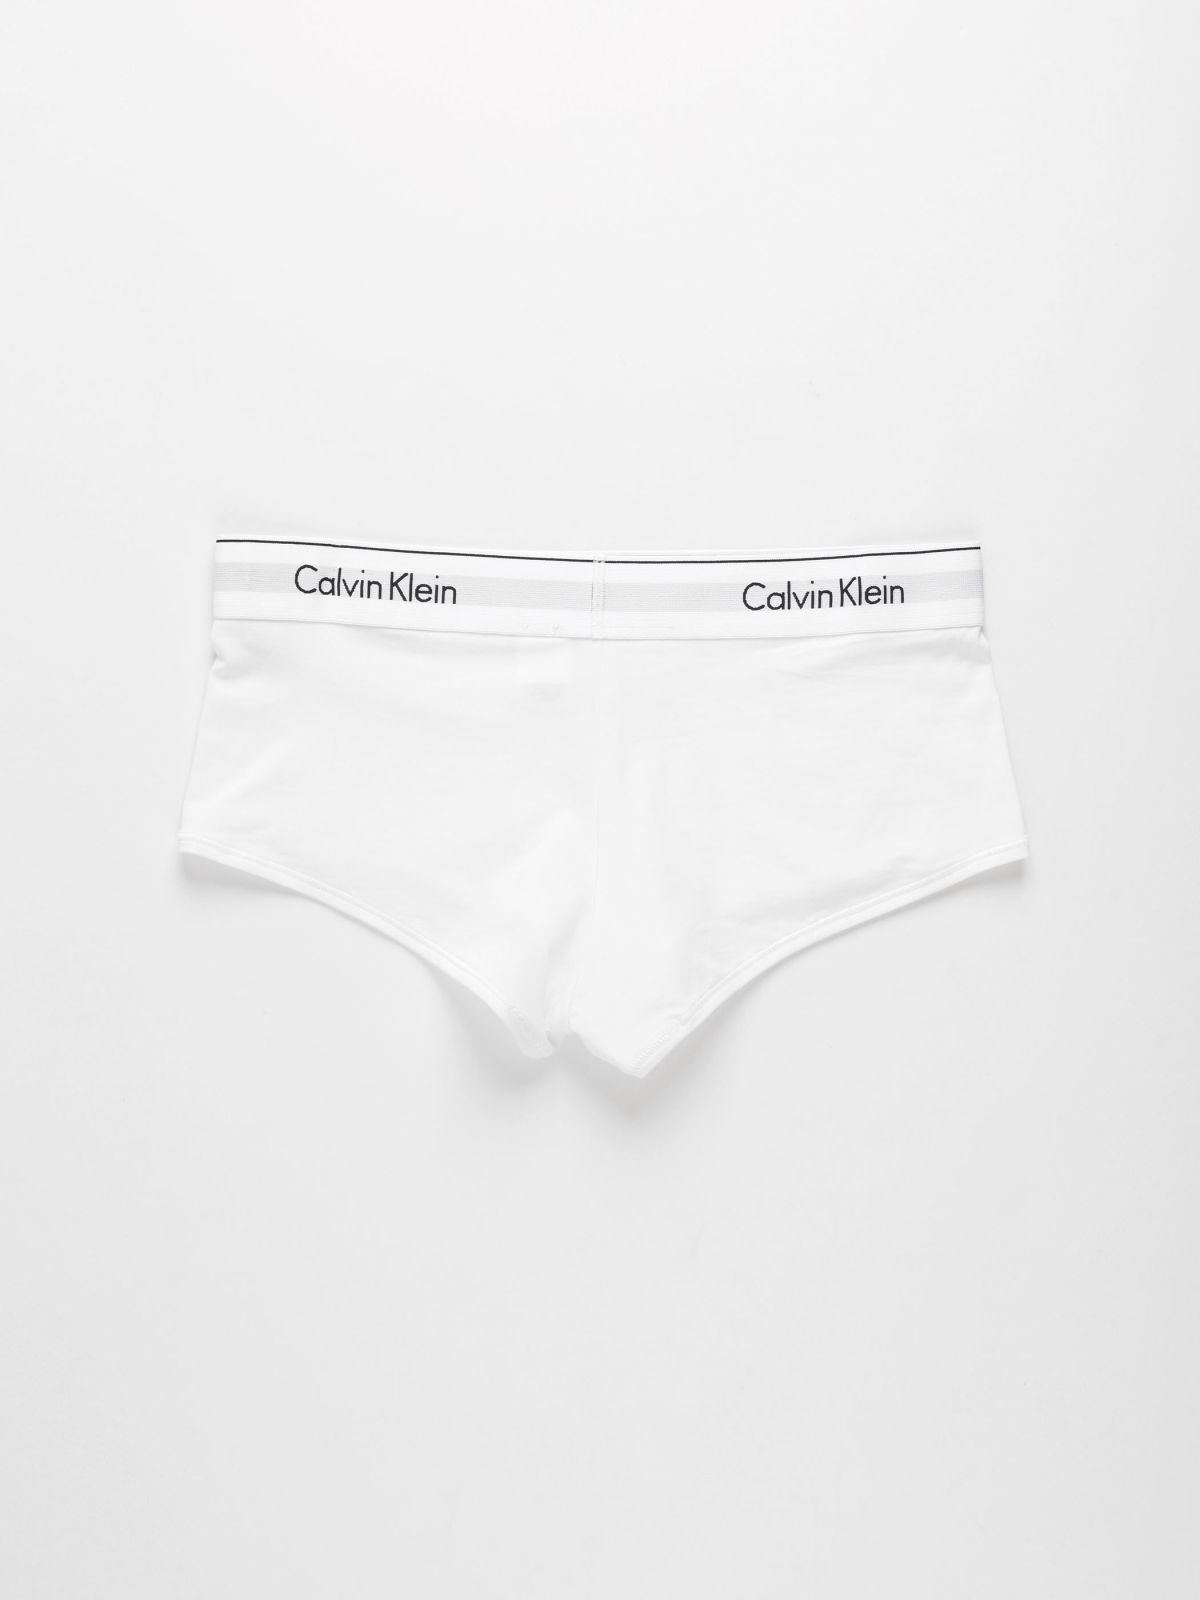  תחתוני בויבריף עם גומי לוגו / נשים של CALVIN KLEIN